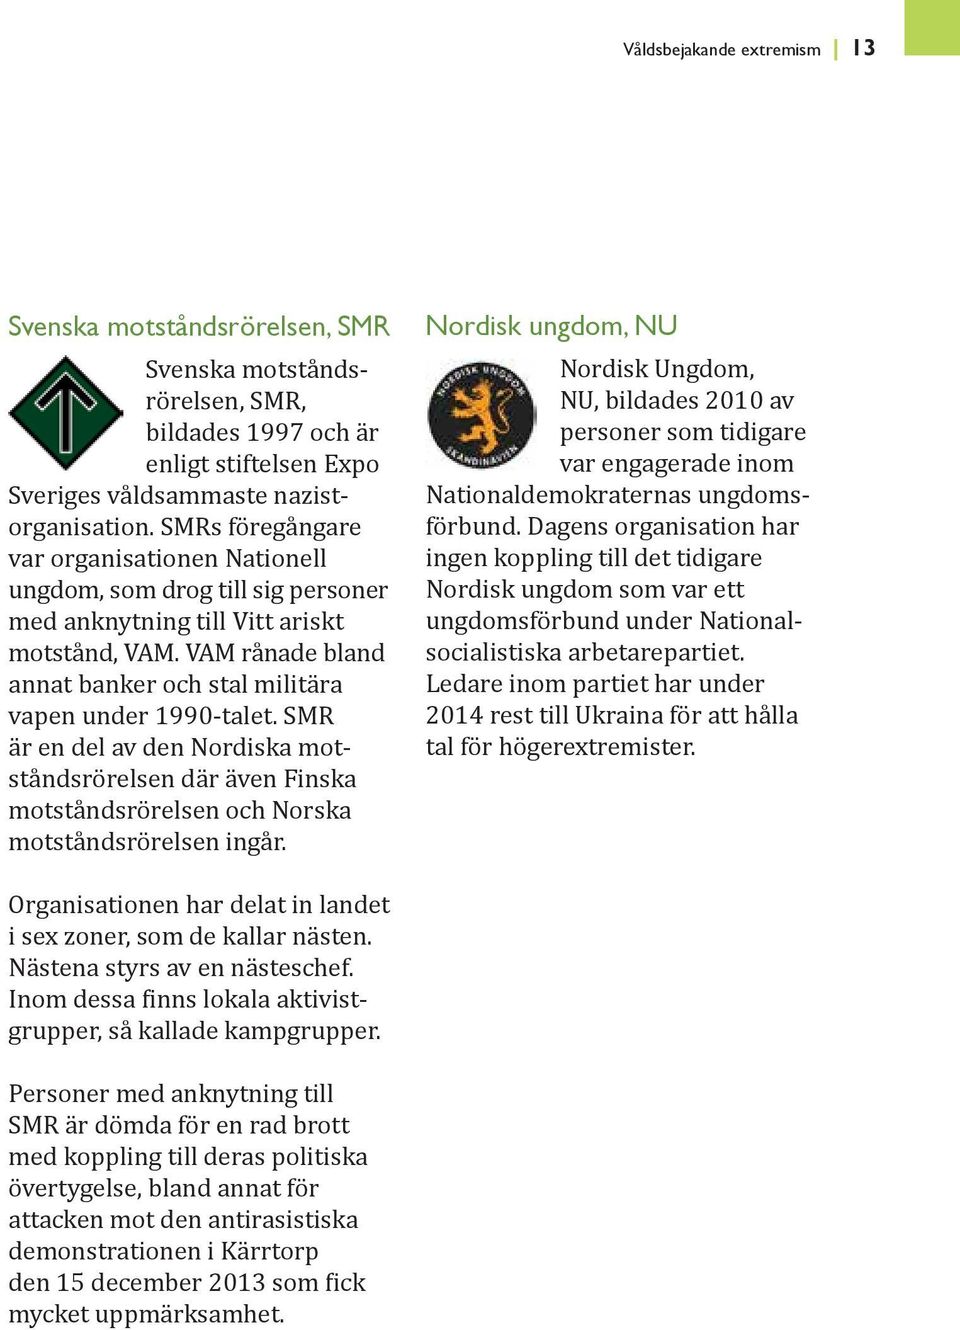 SMR är en del av den Nordiska motståndsrörelsen där även Finska motståndsrörelsen och Norska motståndsrörelsen ingår.